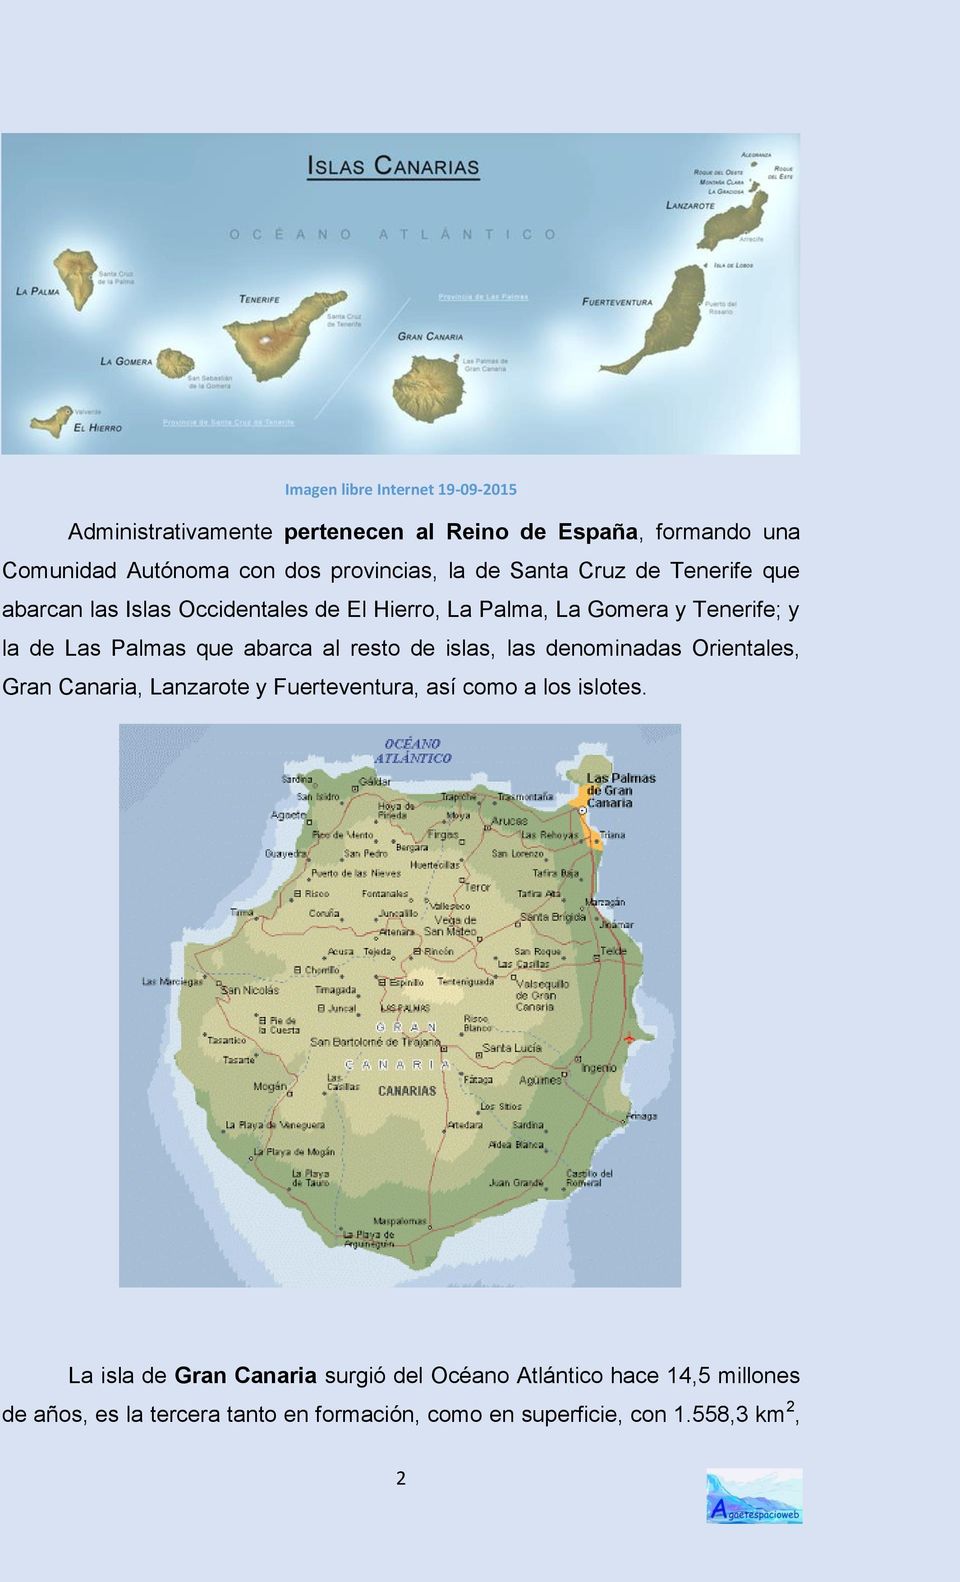 abarca al resto de islas, las denominadas Orientales, Gran Canaria, Lanzarote y Fuerteventura, así como a los islotes.